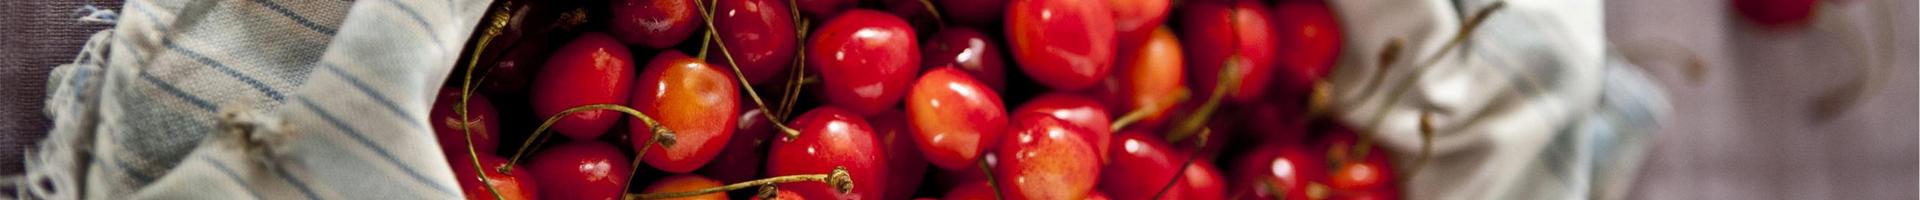 ph-cherries